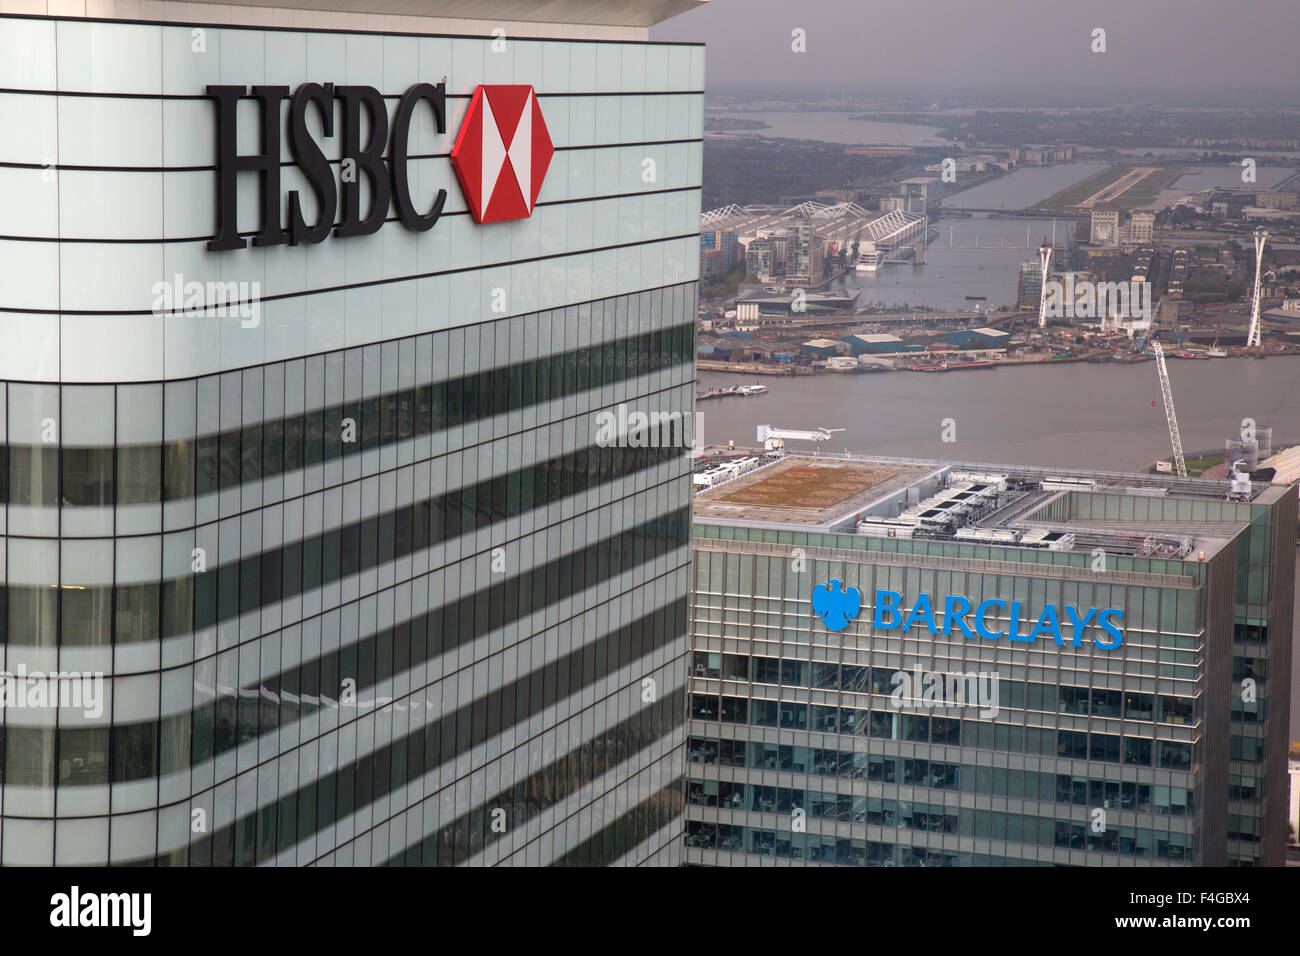 Vue aérienne d'une partie de Canary Wharf à Londres, avec la HSBC et Barclays bâtiments dans l'avant-plan, et l'aéroport de London City. Banque D'Images